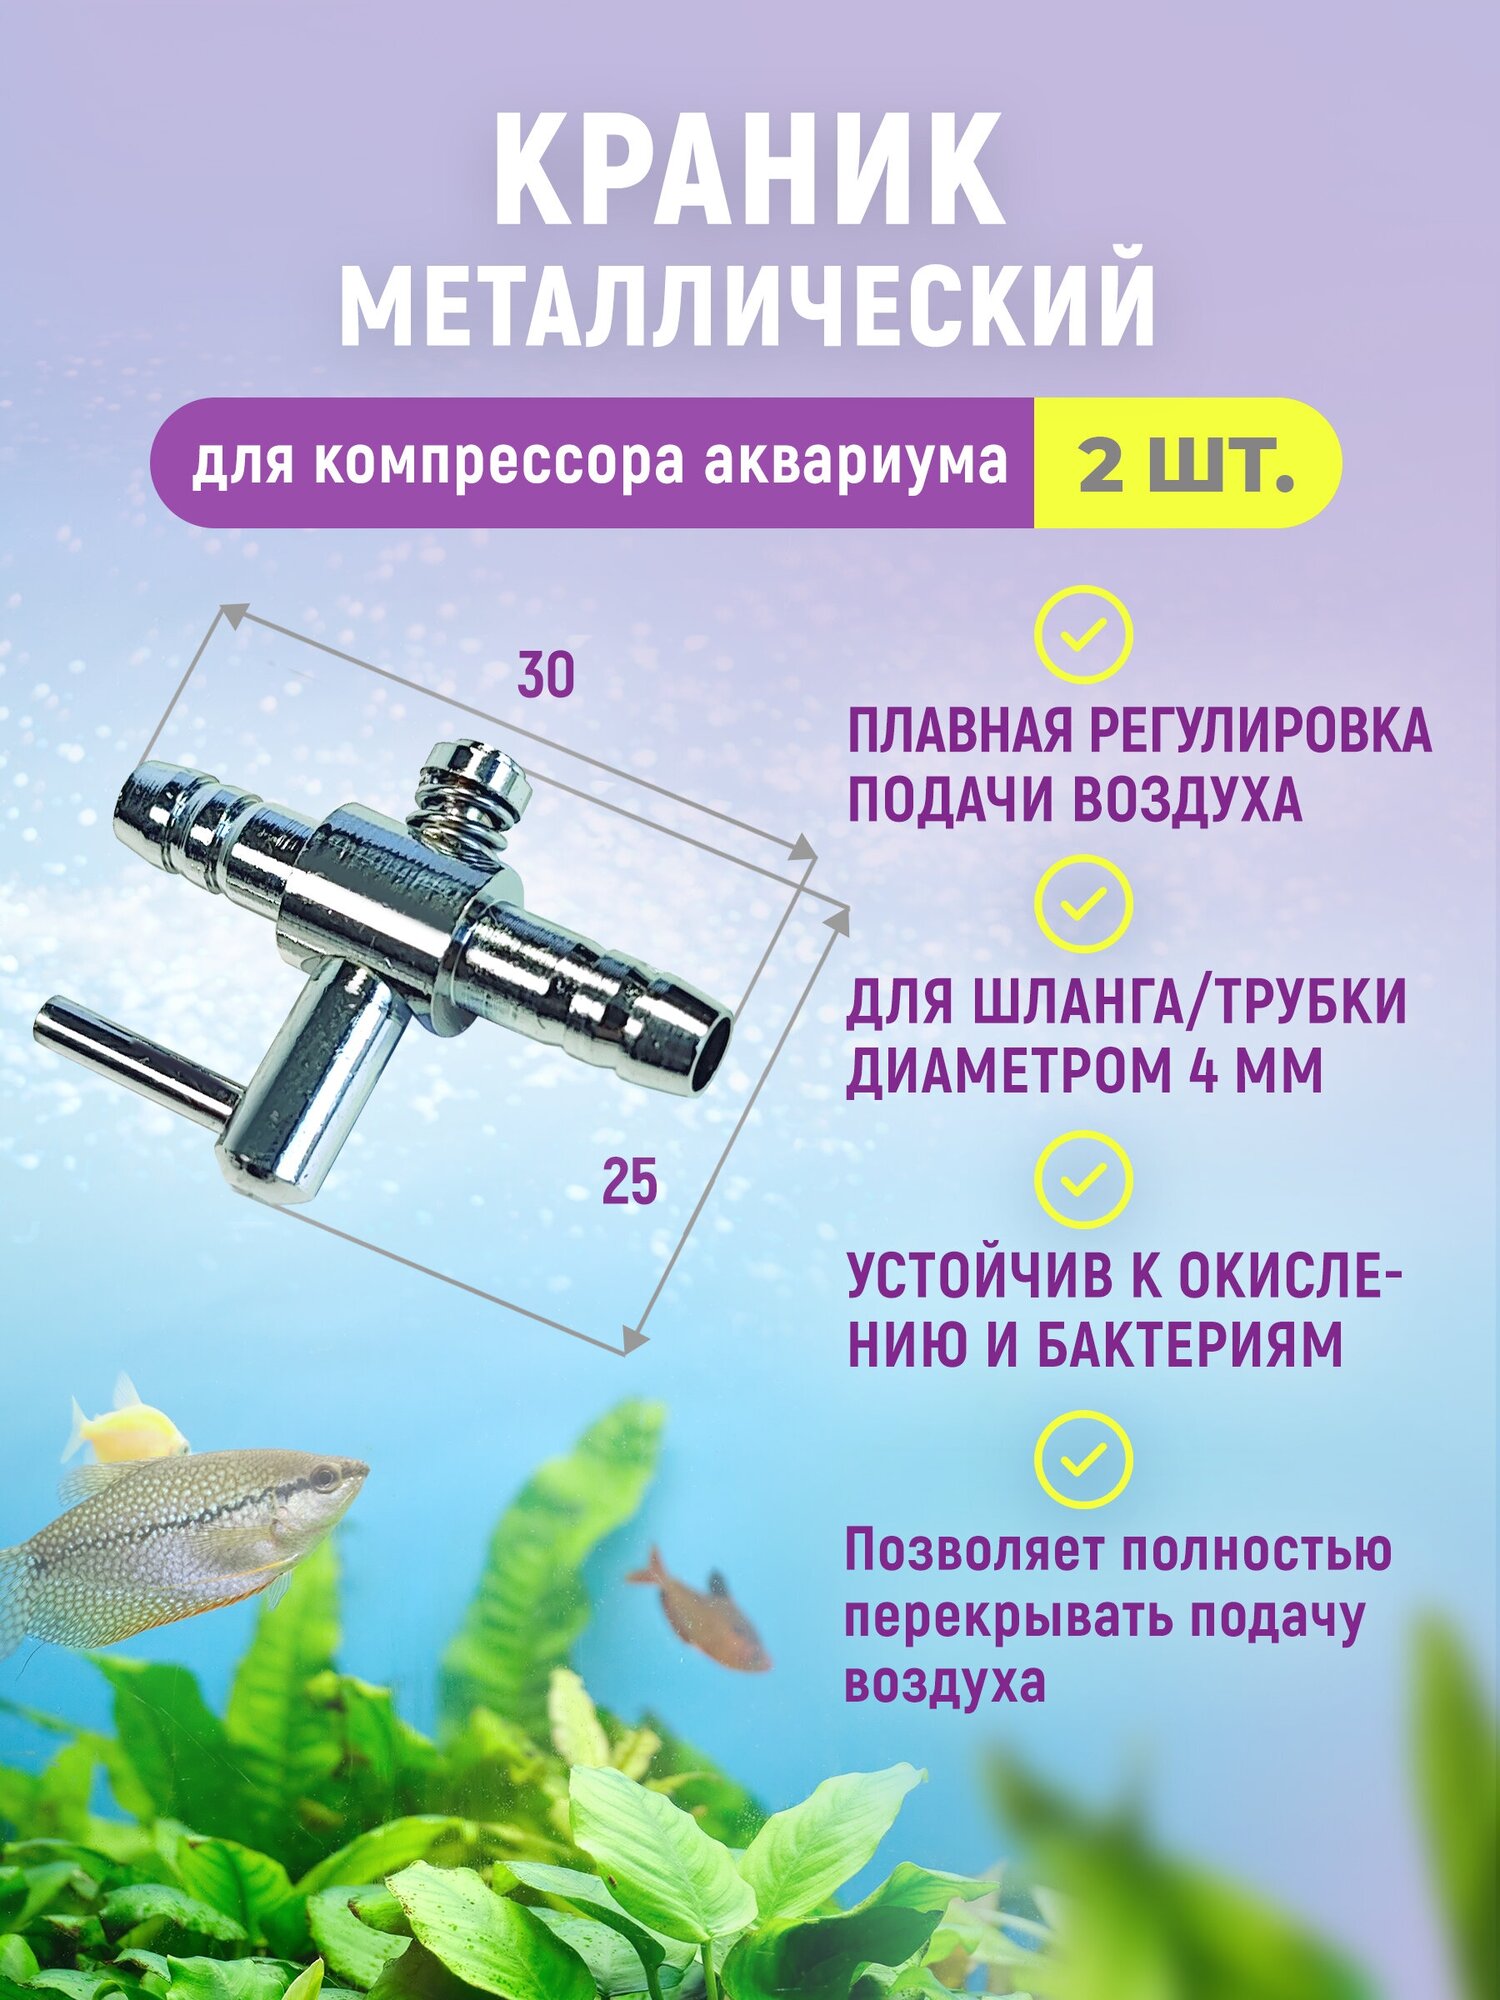 Краник металлический (медный хромированный) для аквариума